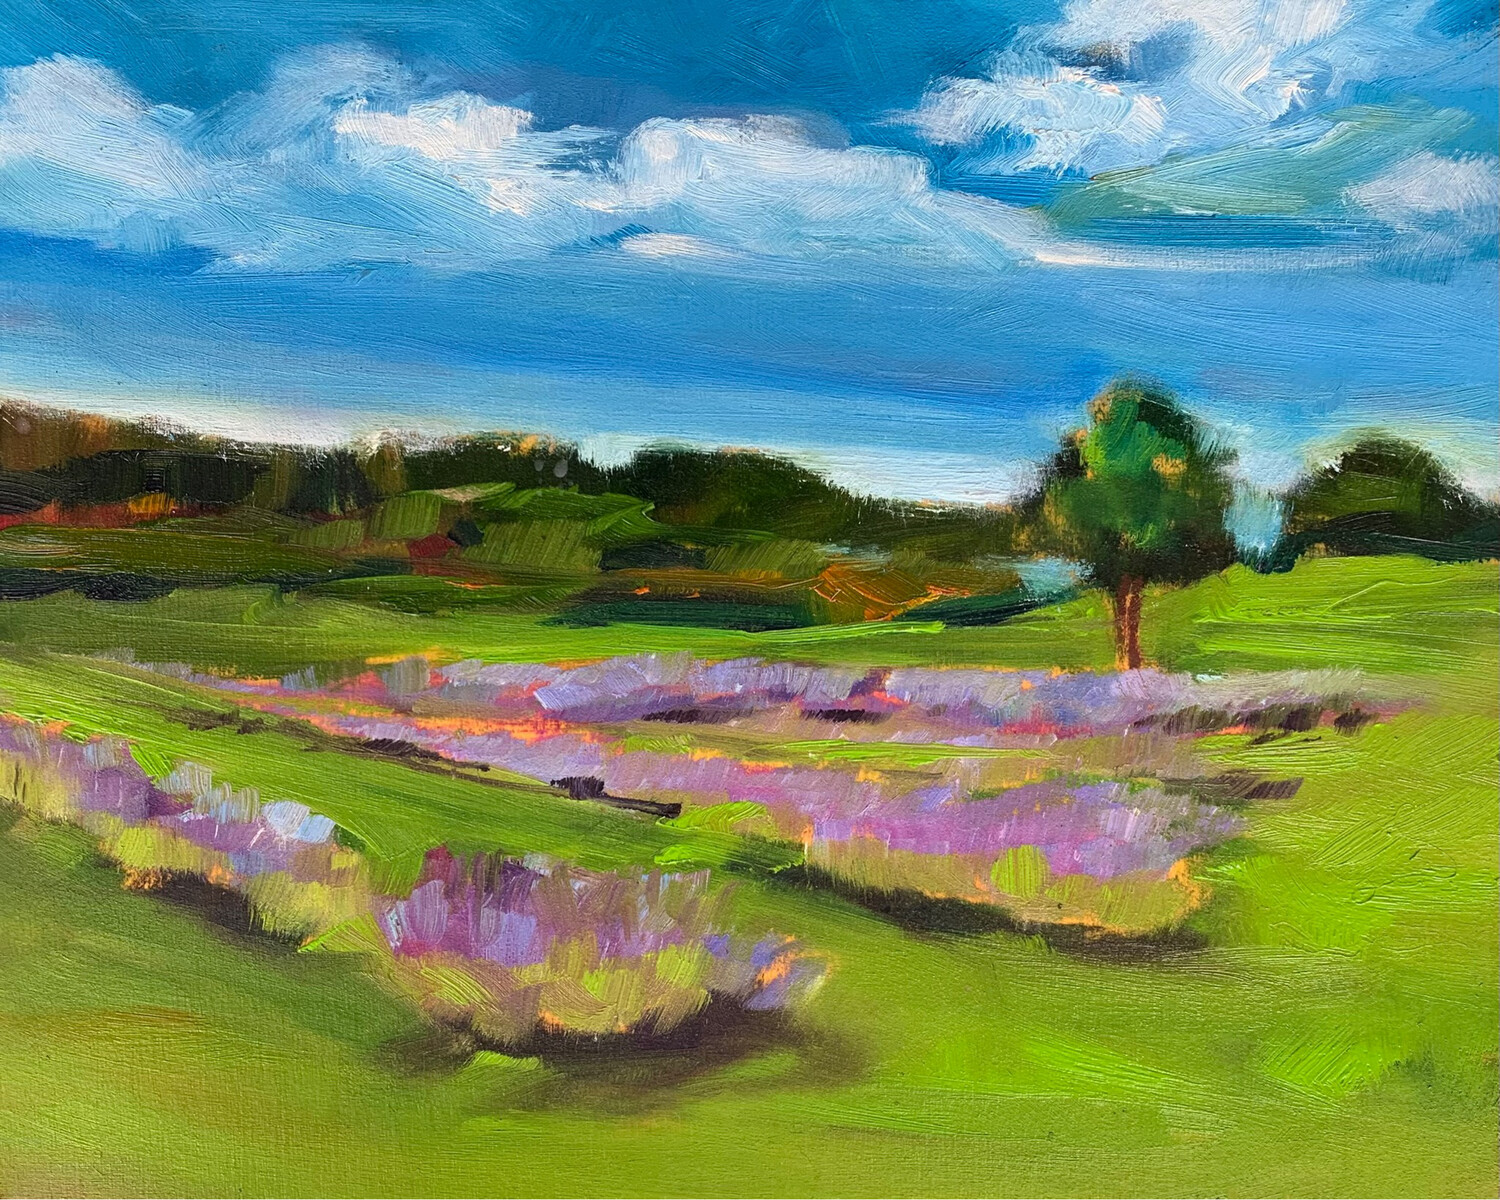 I Dream of Lavender Fields